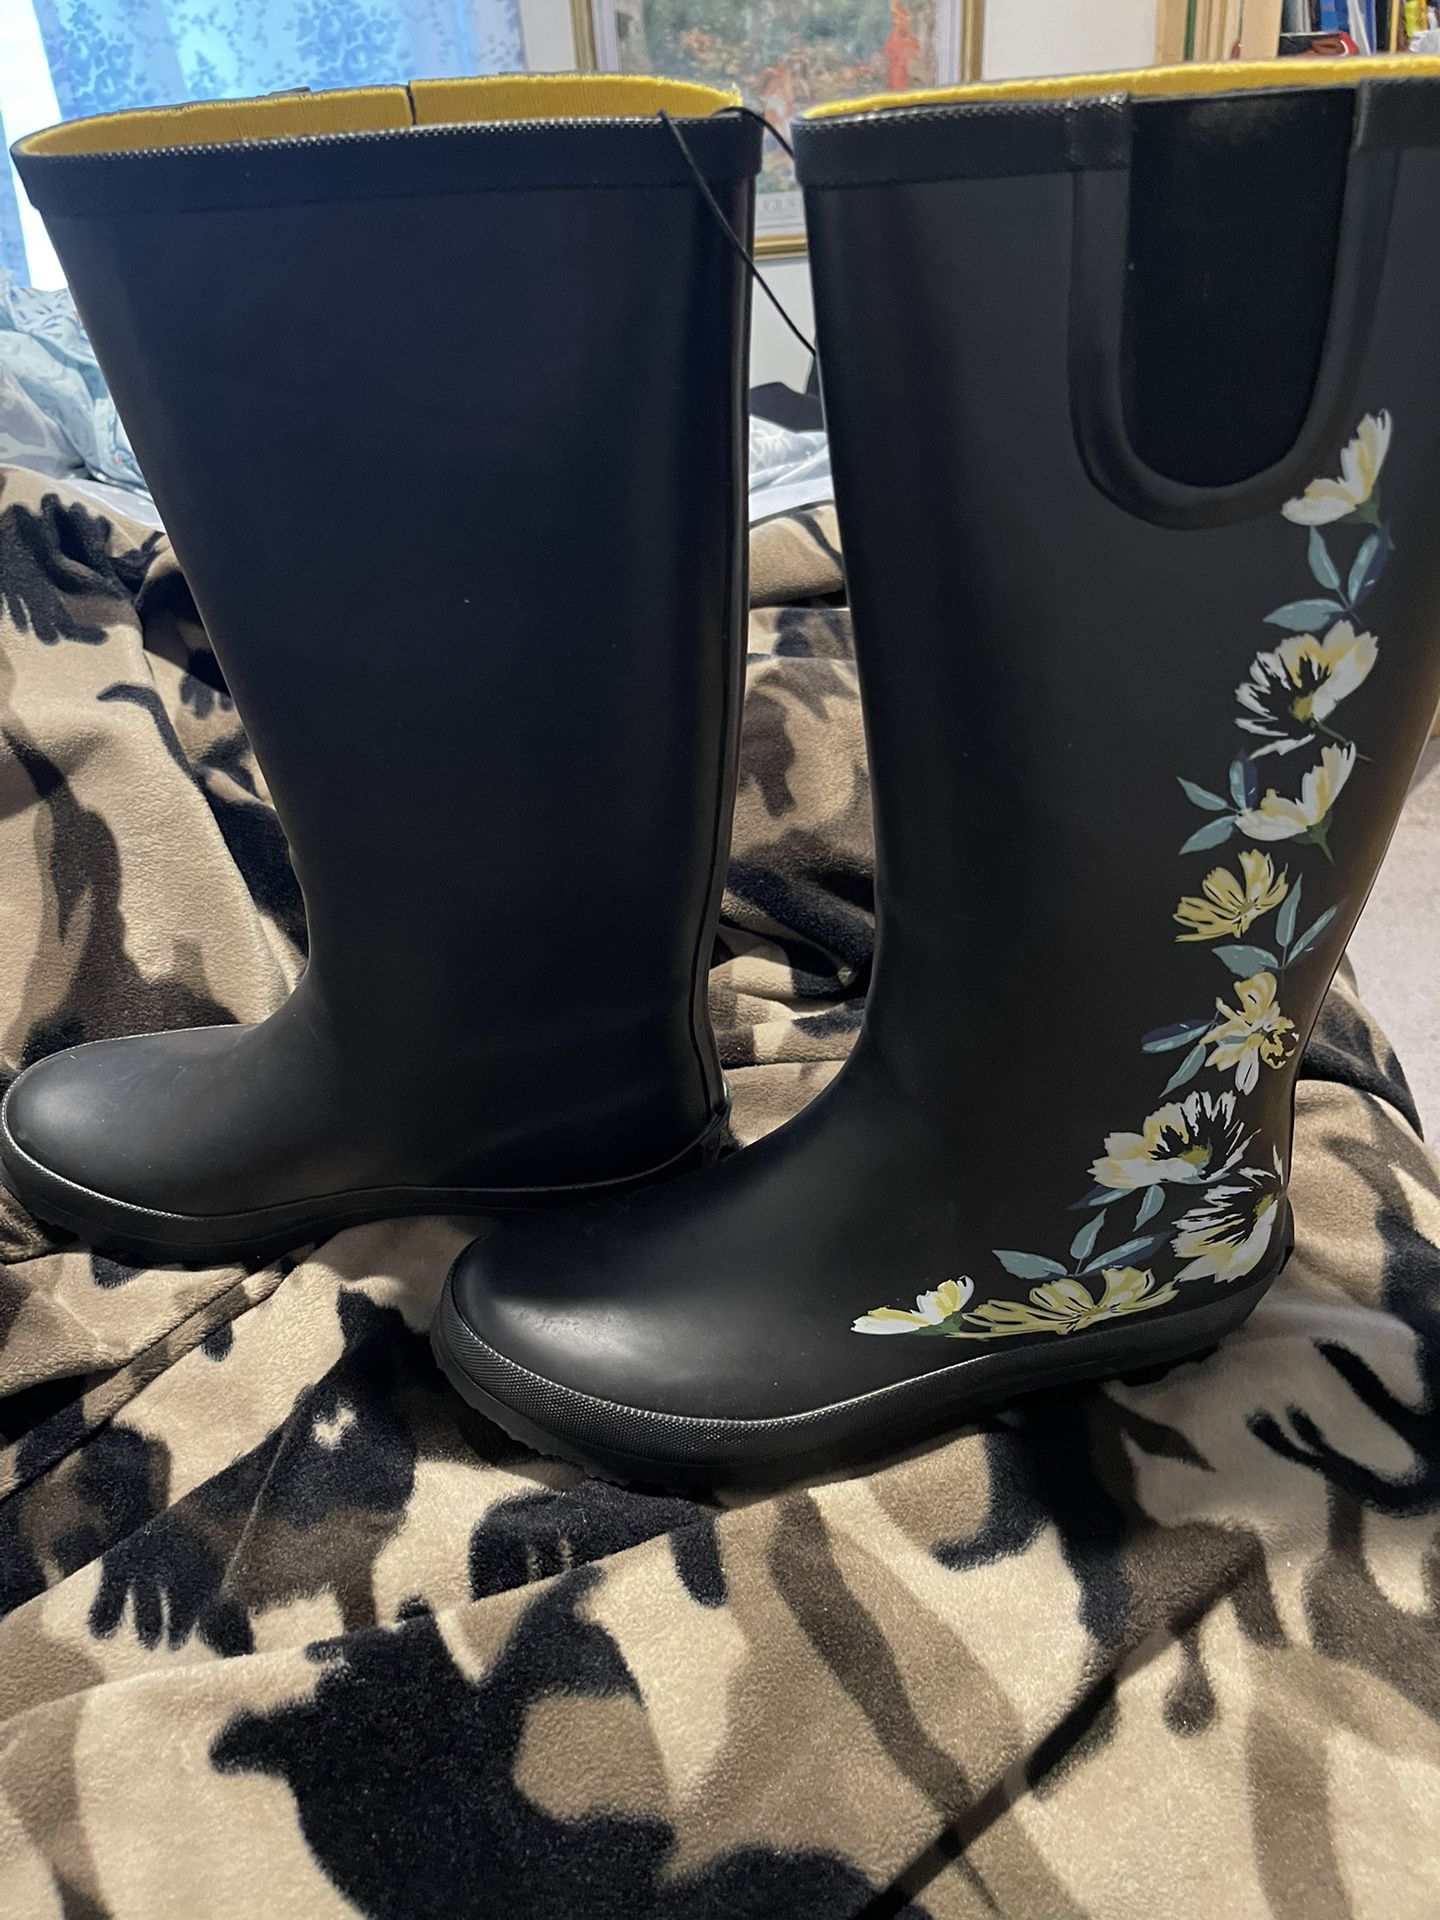 NWT Serra Woman’s Size 9 Tall Flowered Rain Boots